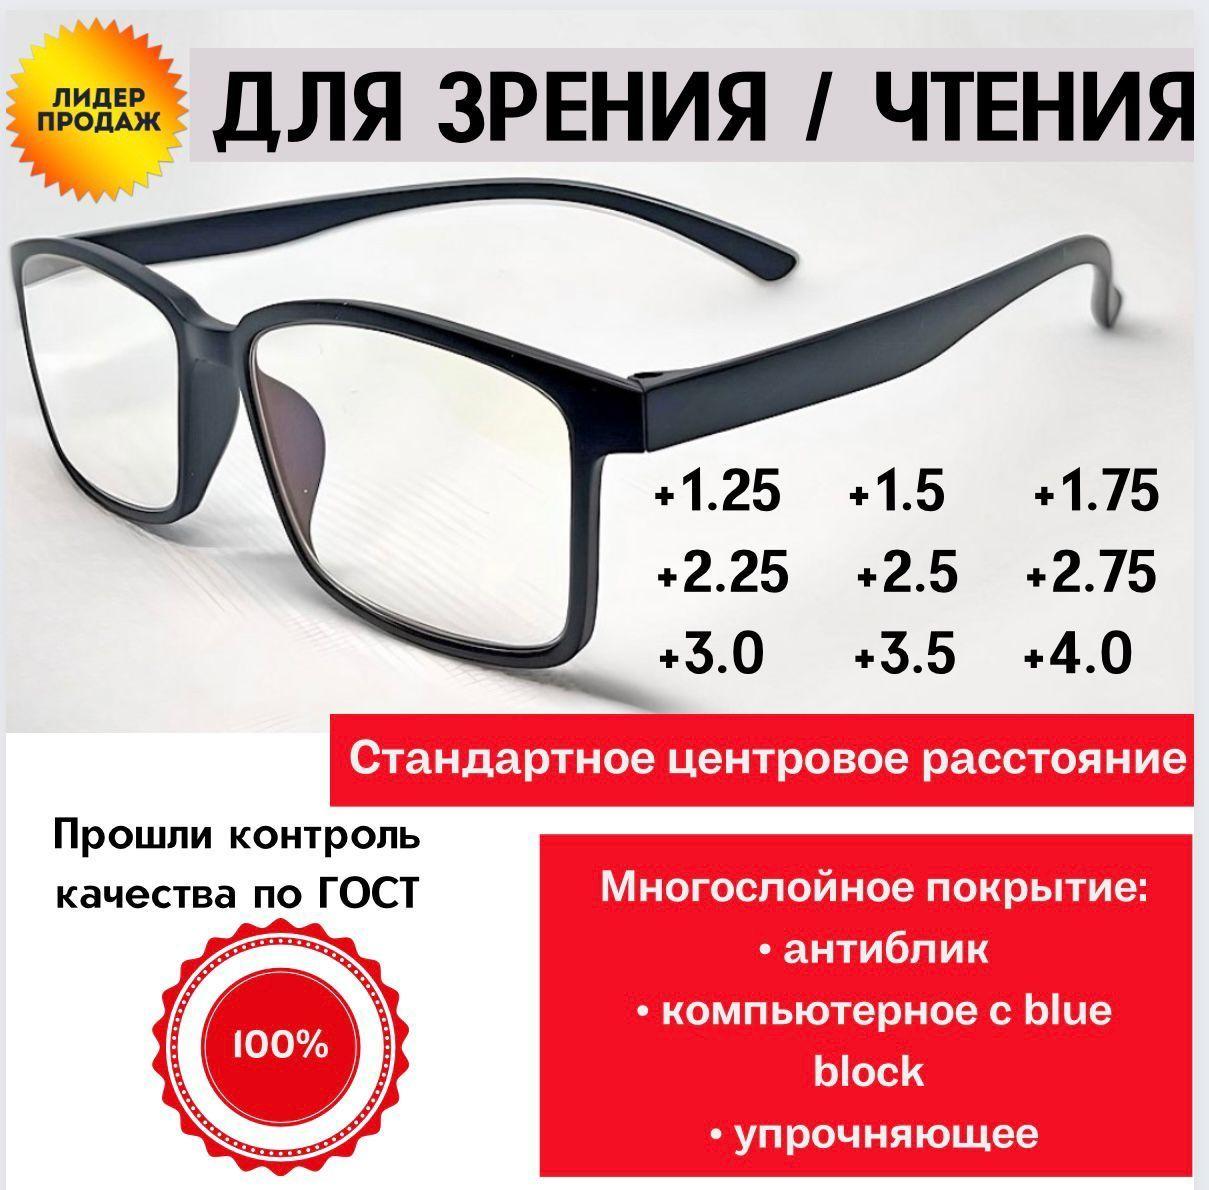 Готовые очки для зрения / очки +1.5 / очки очки недорого / карбоновые очки /очки для чтения/ очки корригирующие / очки с диоптриями / очки зрение / оптика / купить очки для зрения / очки для зрения мужские/ очки для зрения женские